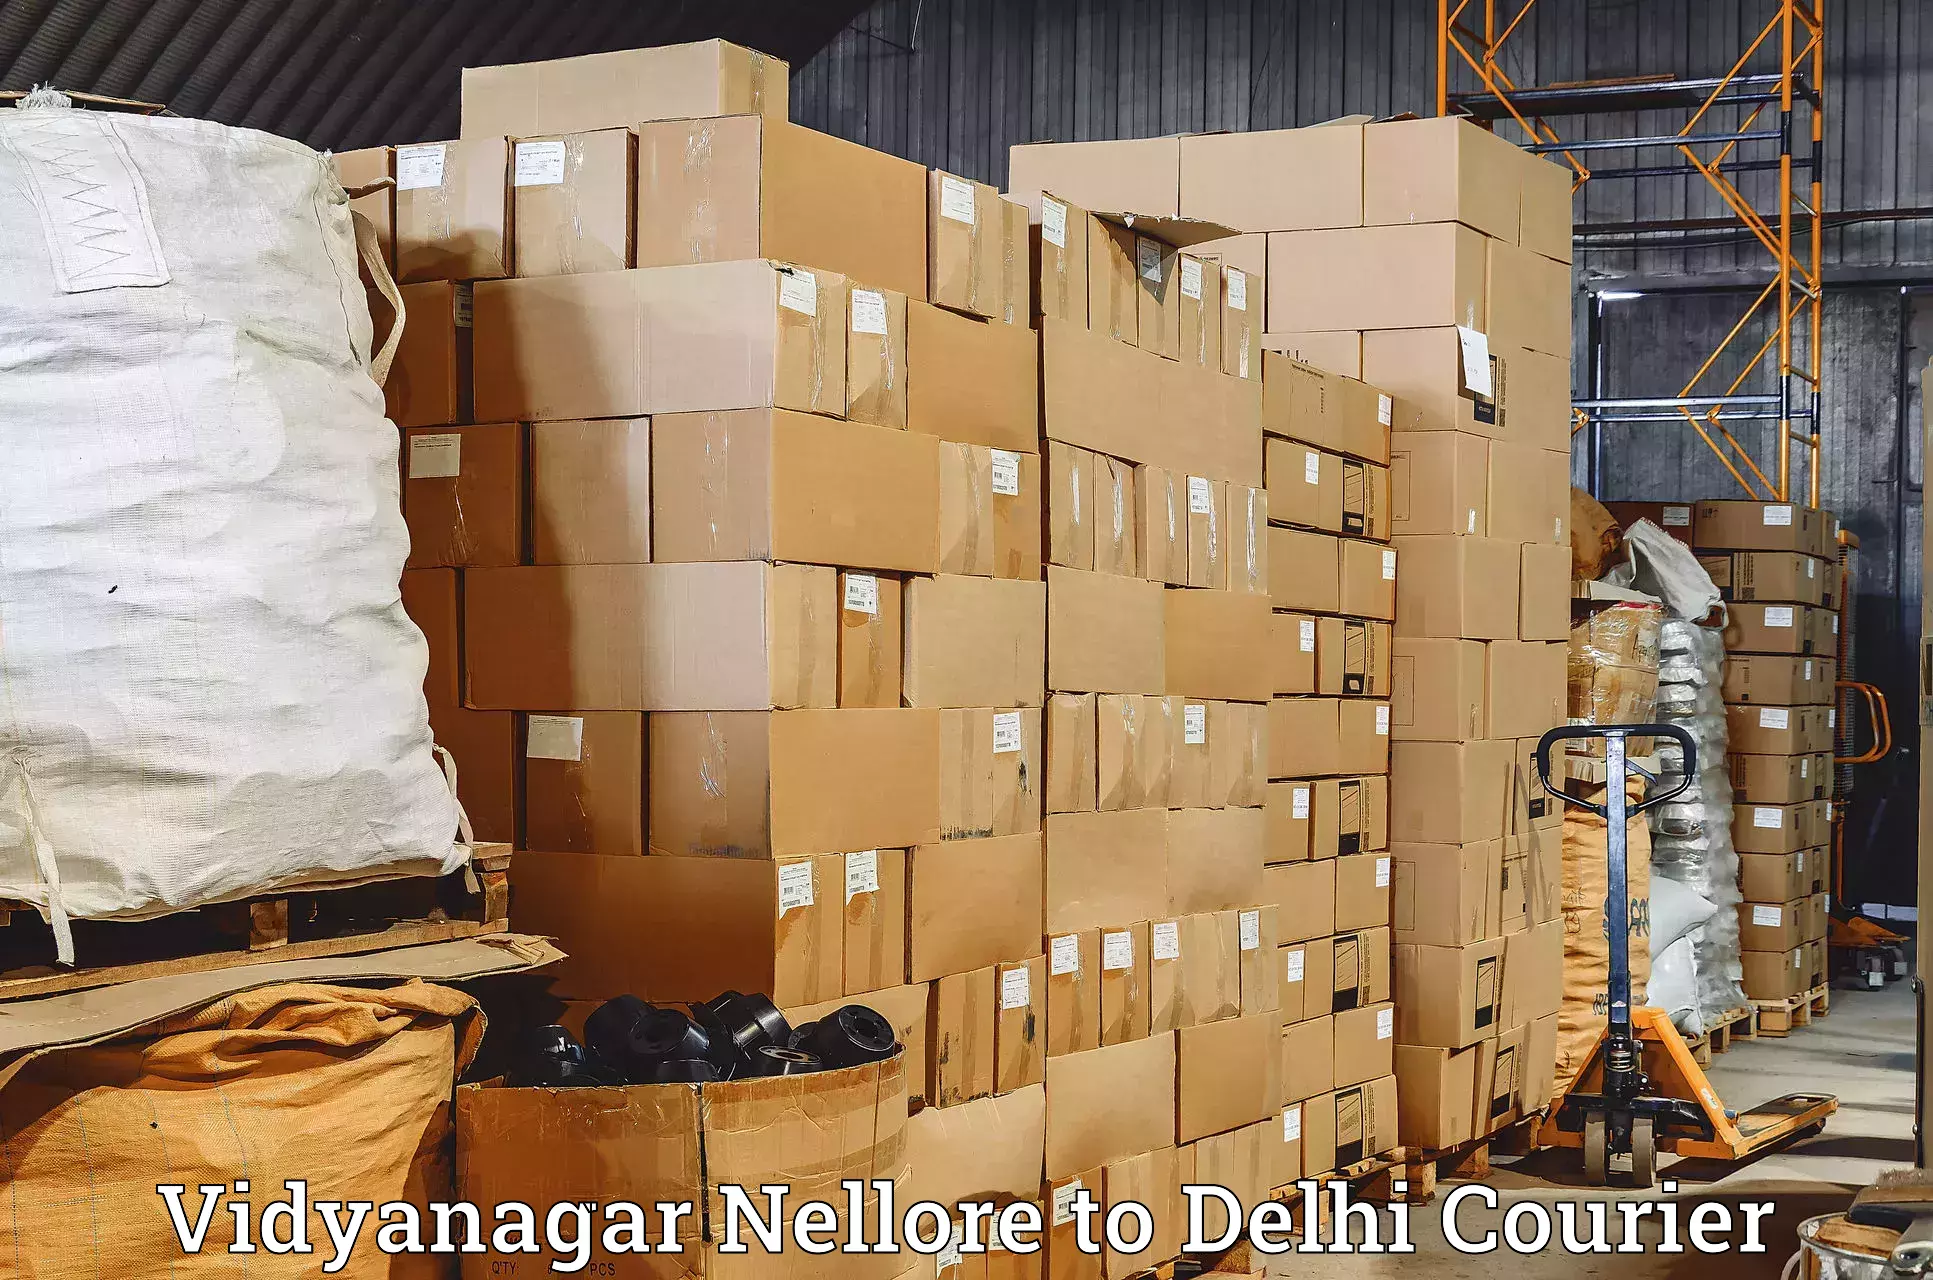 Comprehensive freight services Vidyanagar Nellore to Delhi